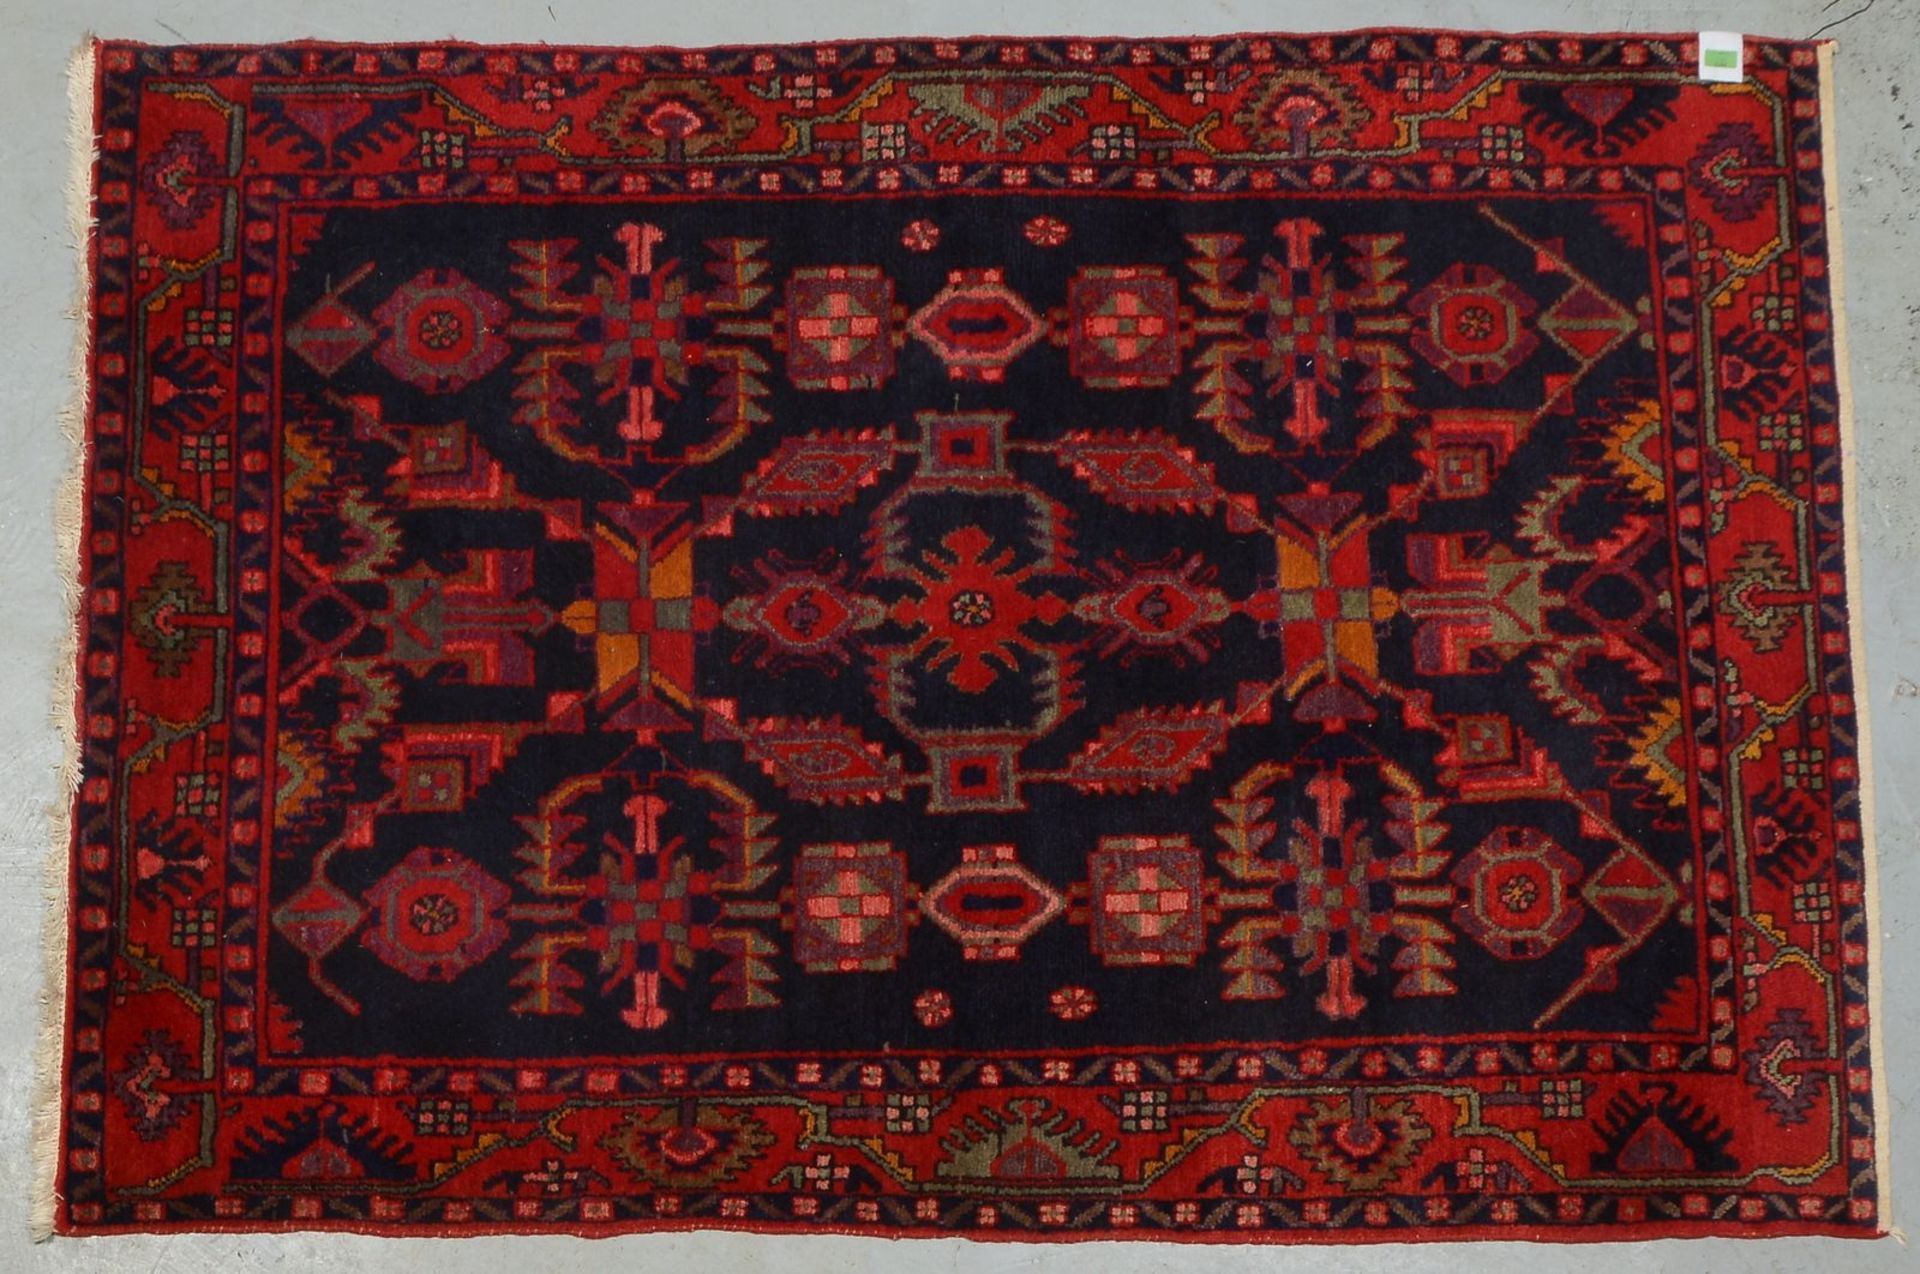 Orientteppich, ringsum komplett, gleichm&auml;&szlig;iger Flor - in gutem Zustand; Ma&szlig;e 205 x